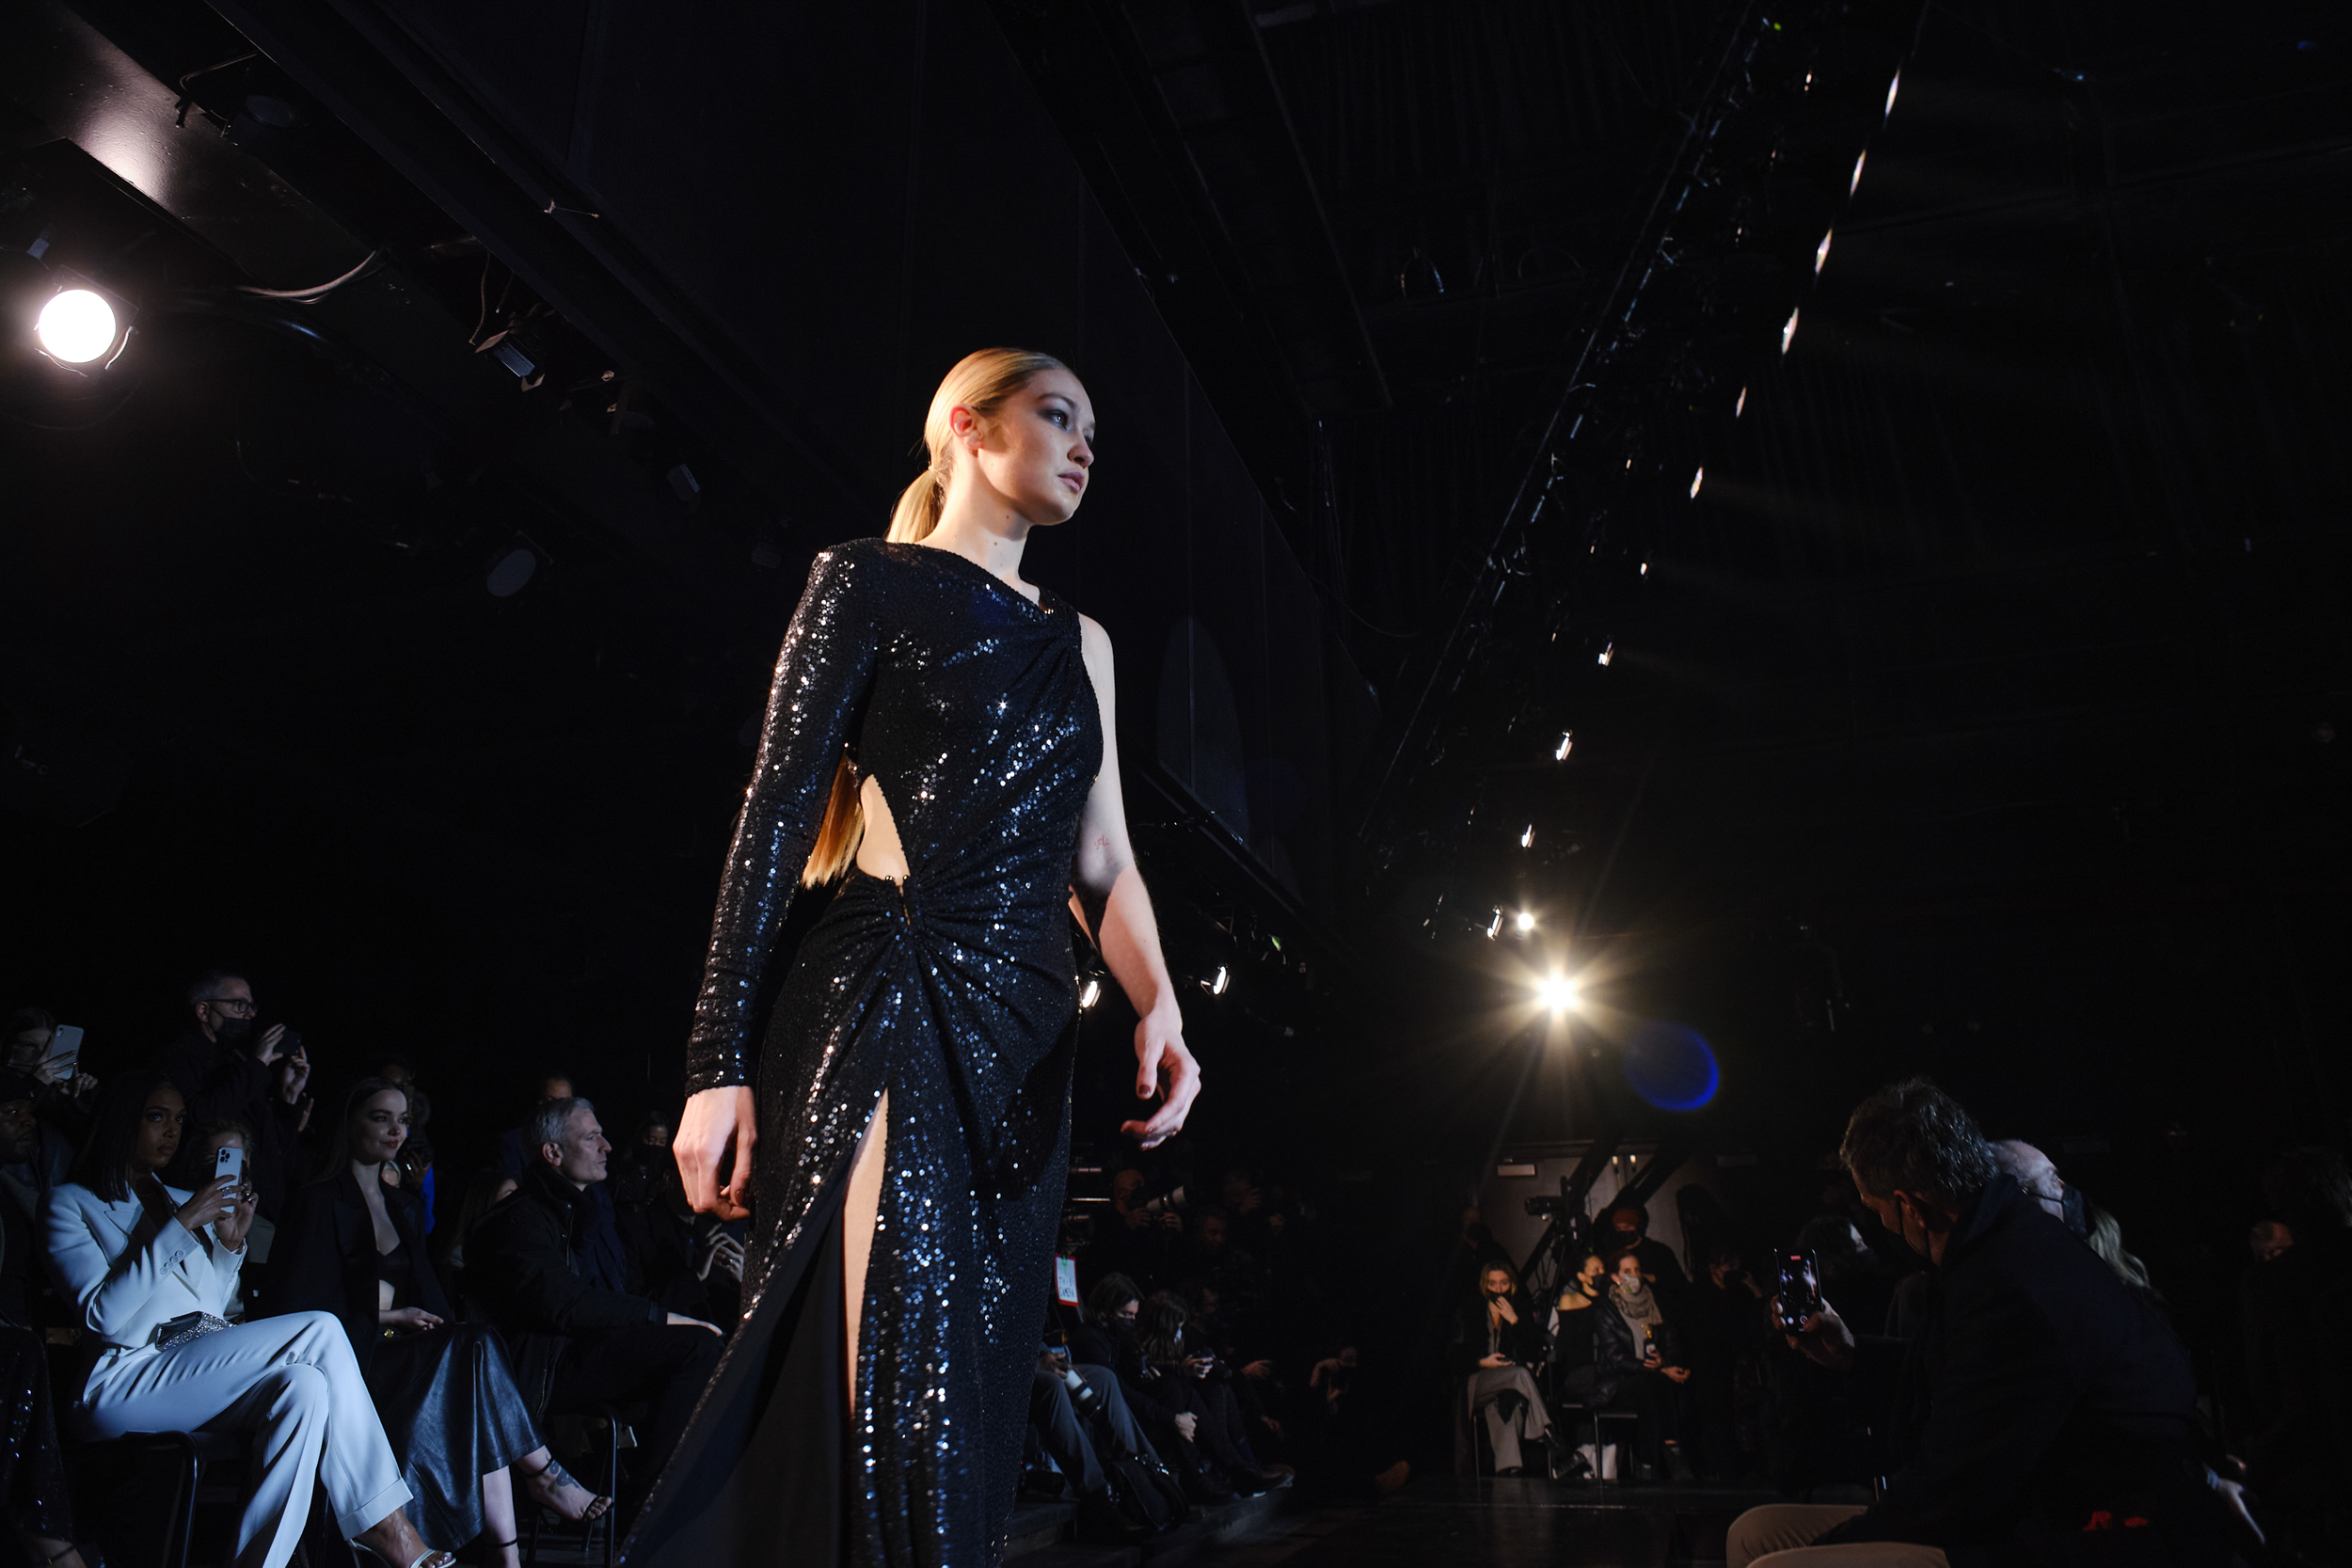 Michael Kors Fall 2022 Fashion Show Atmosphere Fashion Show